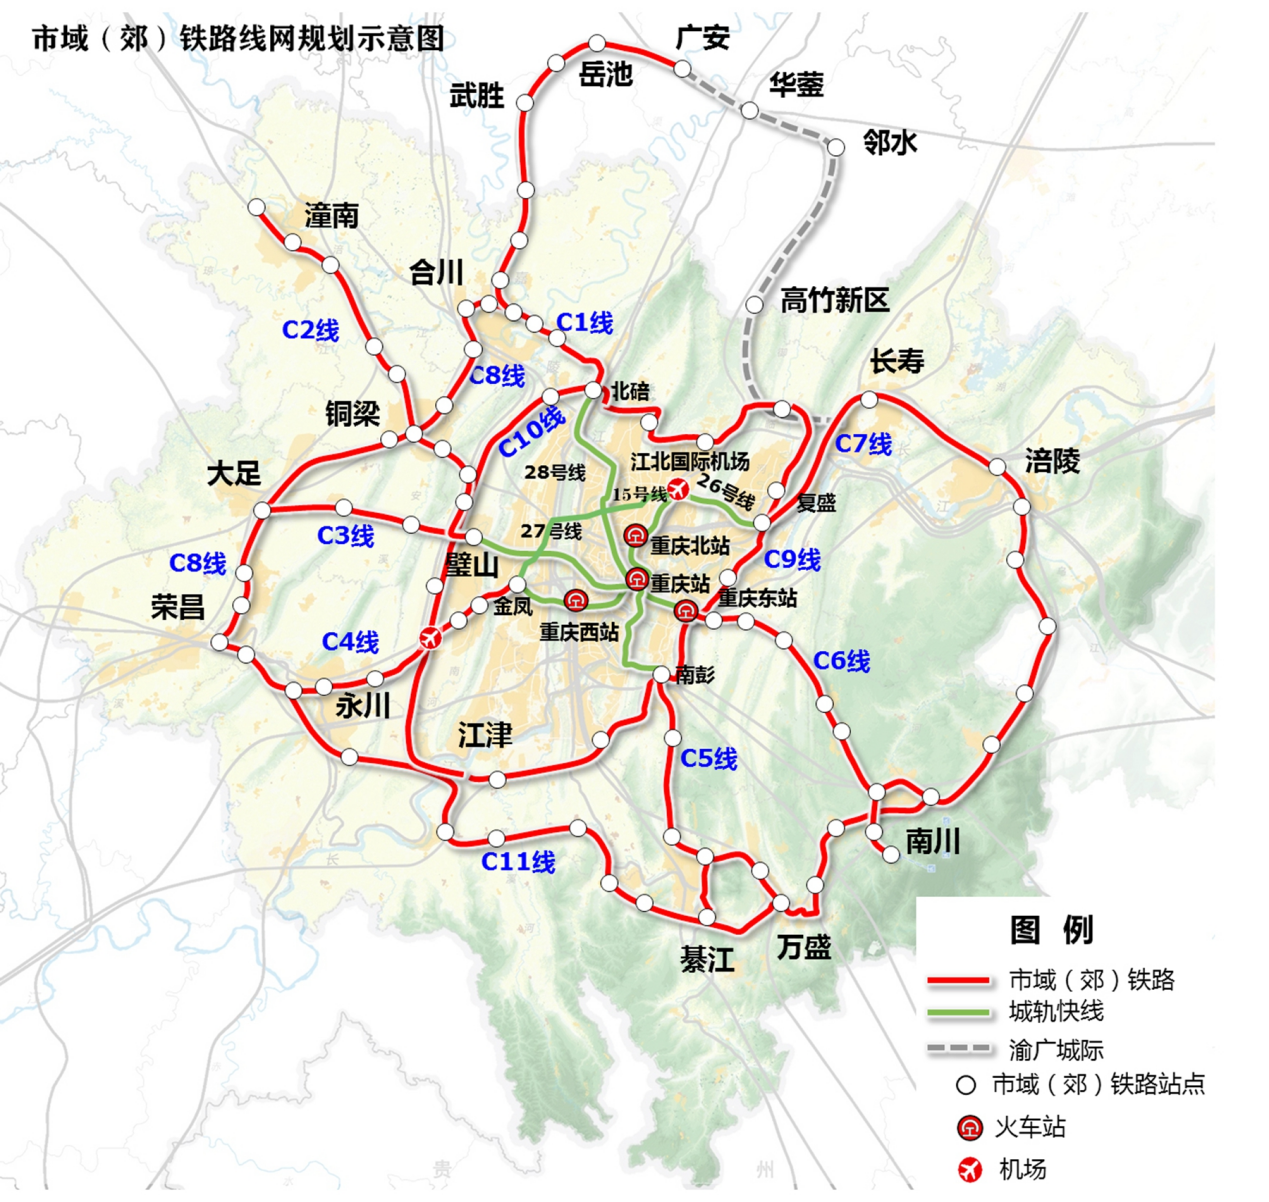 重庆市域(郊)铁路线网规划示意图